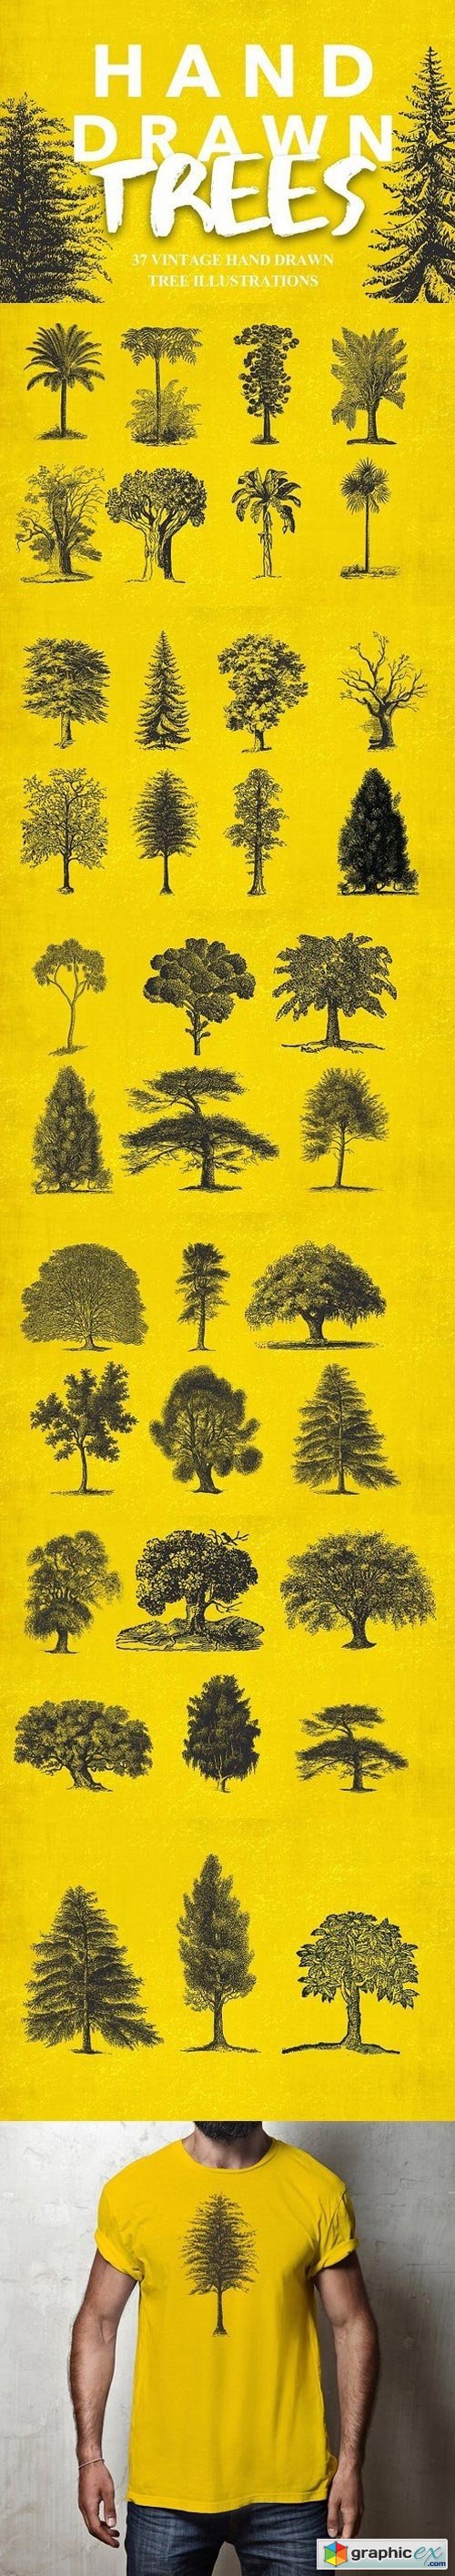 37 Vintage Tree Illustrations